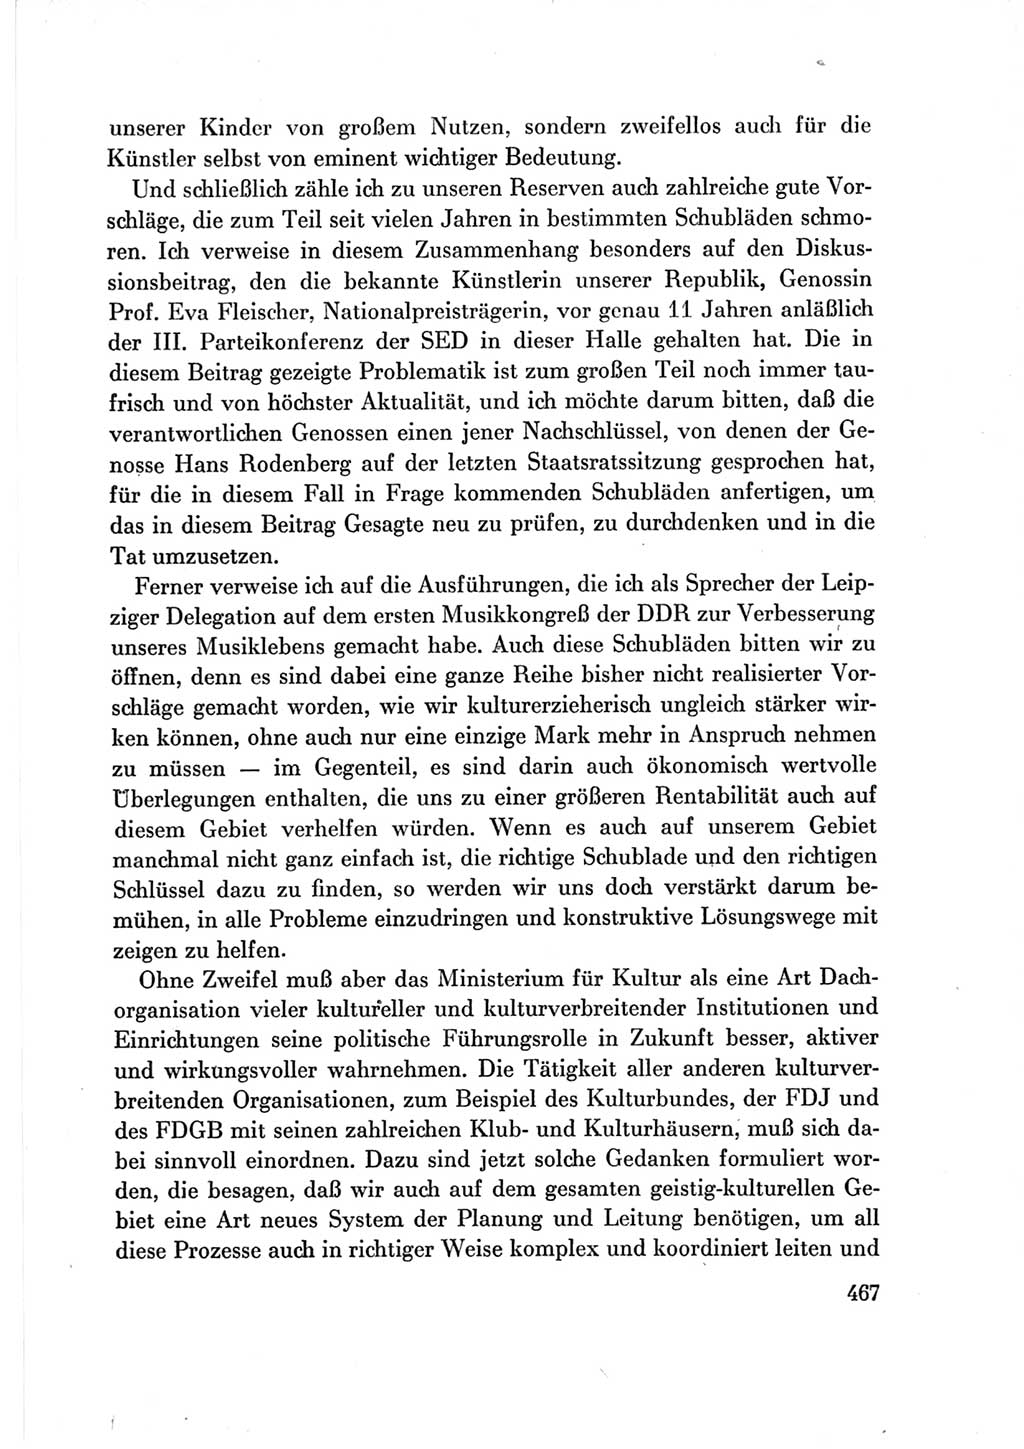 Protokoll der Verhandlungen des Ⅶ. Parteitages der Sozialistischen Einheitspartei Deutschlands (SED) [Deutsche Demokratische Republik (DDR)] 1967, Band Ⅲ, Seite 467 (Prot. Verh. Ⅶ. PT SED DDR 1967, Bd. Ⅲ, S. 467)